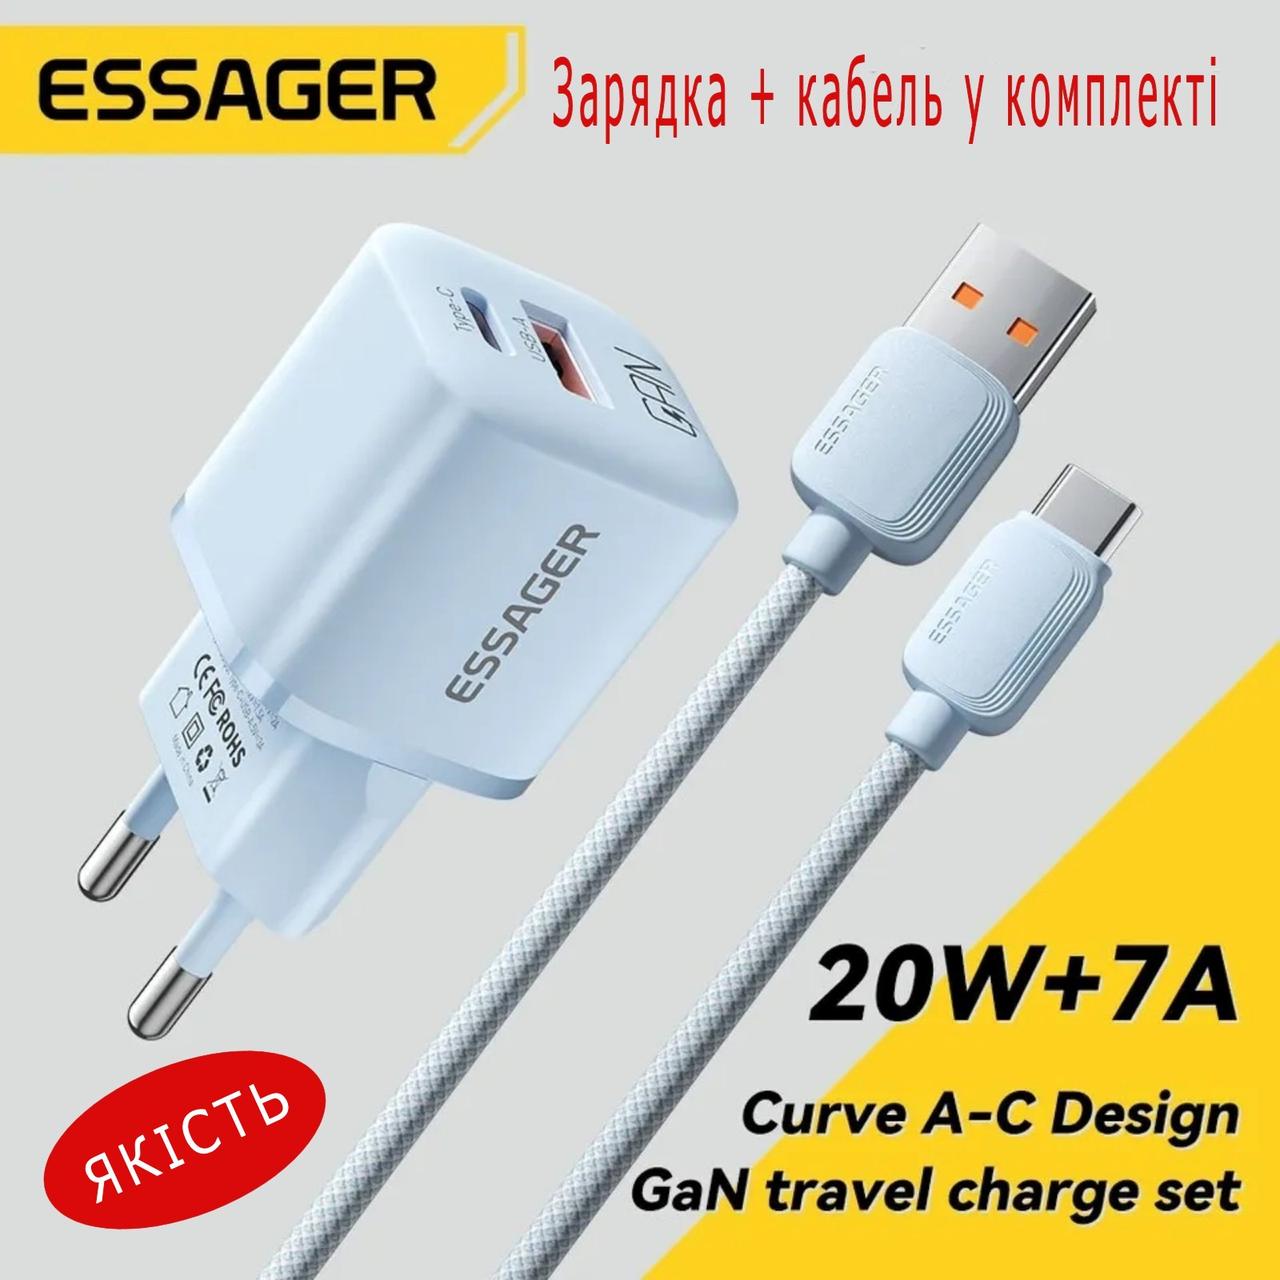 Швидка зарядка Essager для телефона, планшета. USB адаптер. Шнур Type С у комплекті. 20W